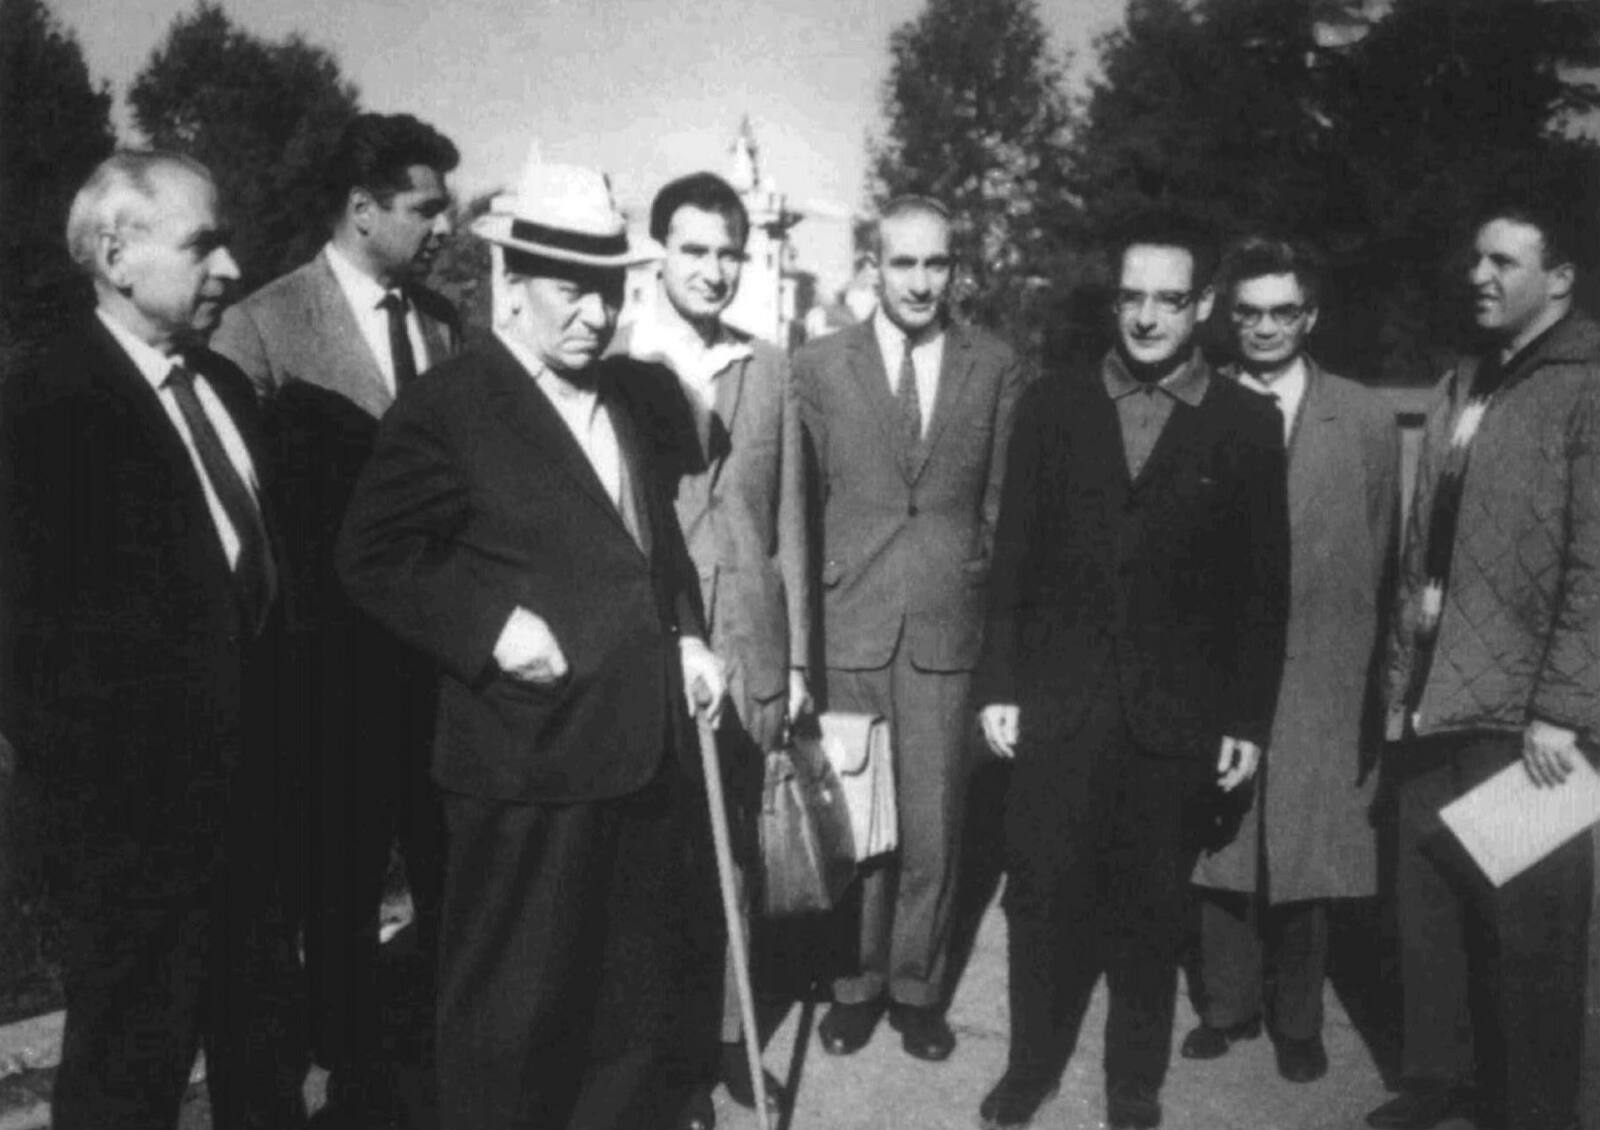 М.С. Козодаев (1-й слева) среди коллег. 1965 г.